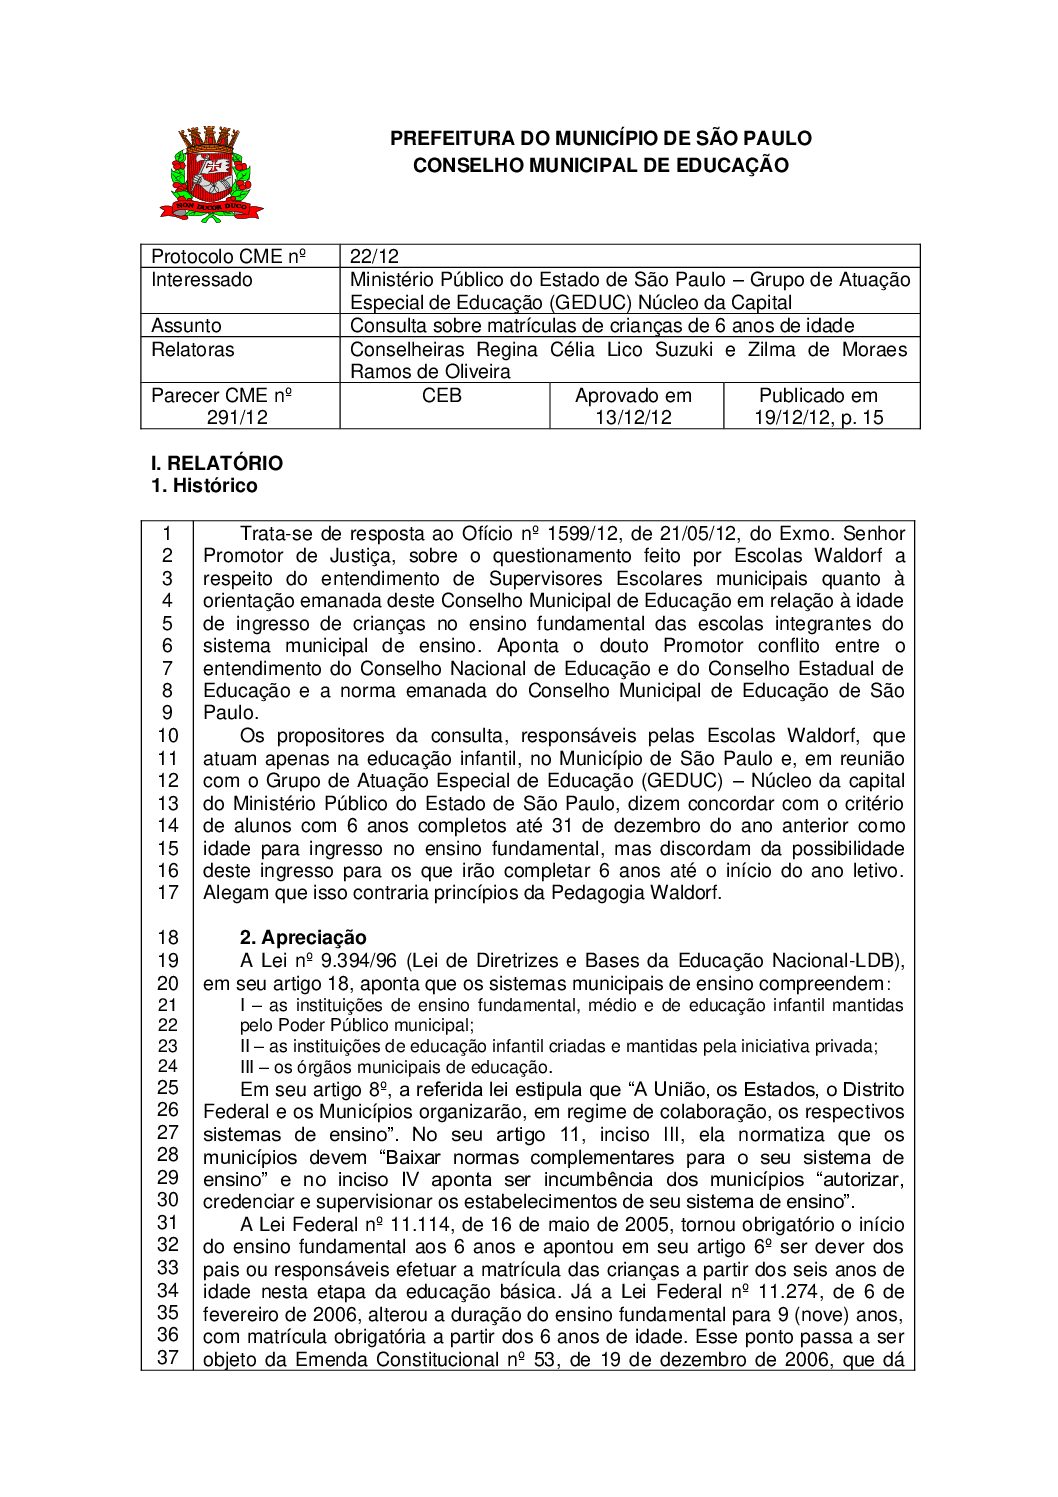 Parecer CME nº 291/2012 - Consulta sobre matrículas de crianças de 6 anos de idade - Ministério Público do Estado de São Paulo – Grupo de Atuação Especial de Educação (GEDUC) Núcleo da Capital 